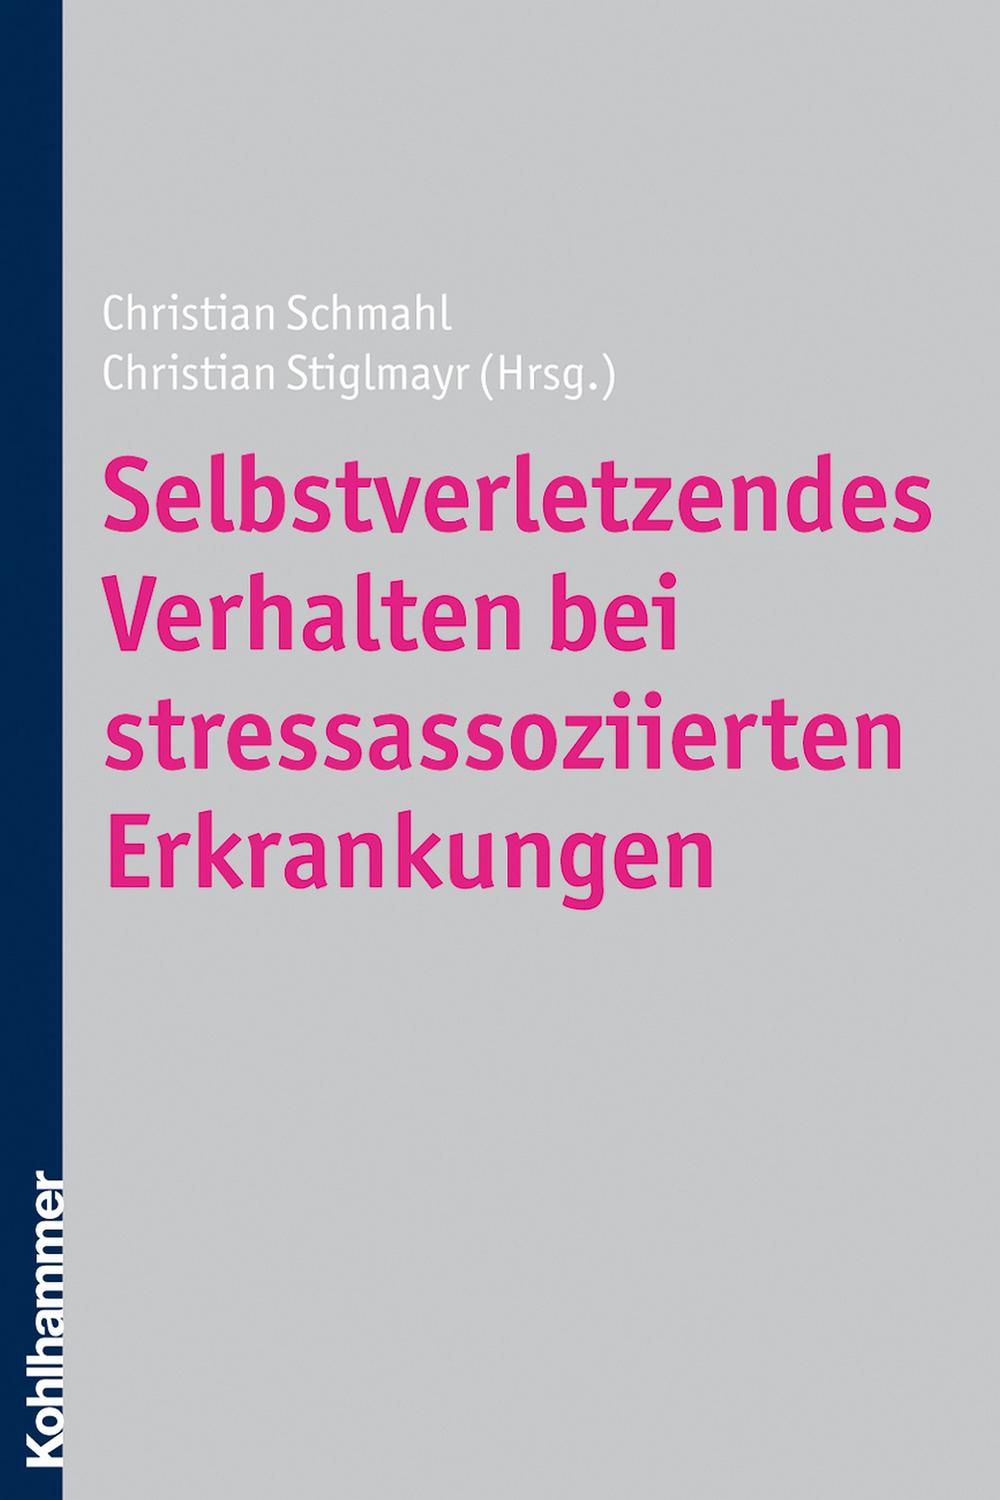 Selbstverletzendes Verhalten bei stressassoziierten Erkrankungen - Christian Schmahl, Christian Stiglmayr